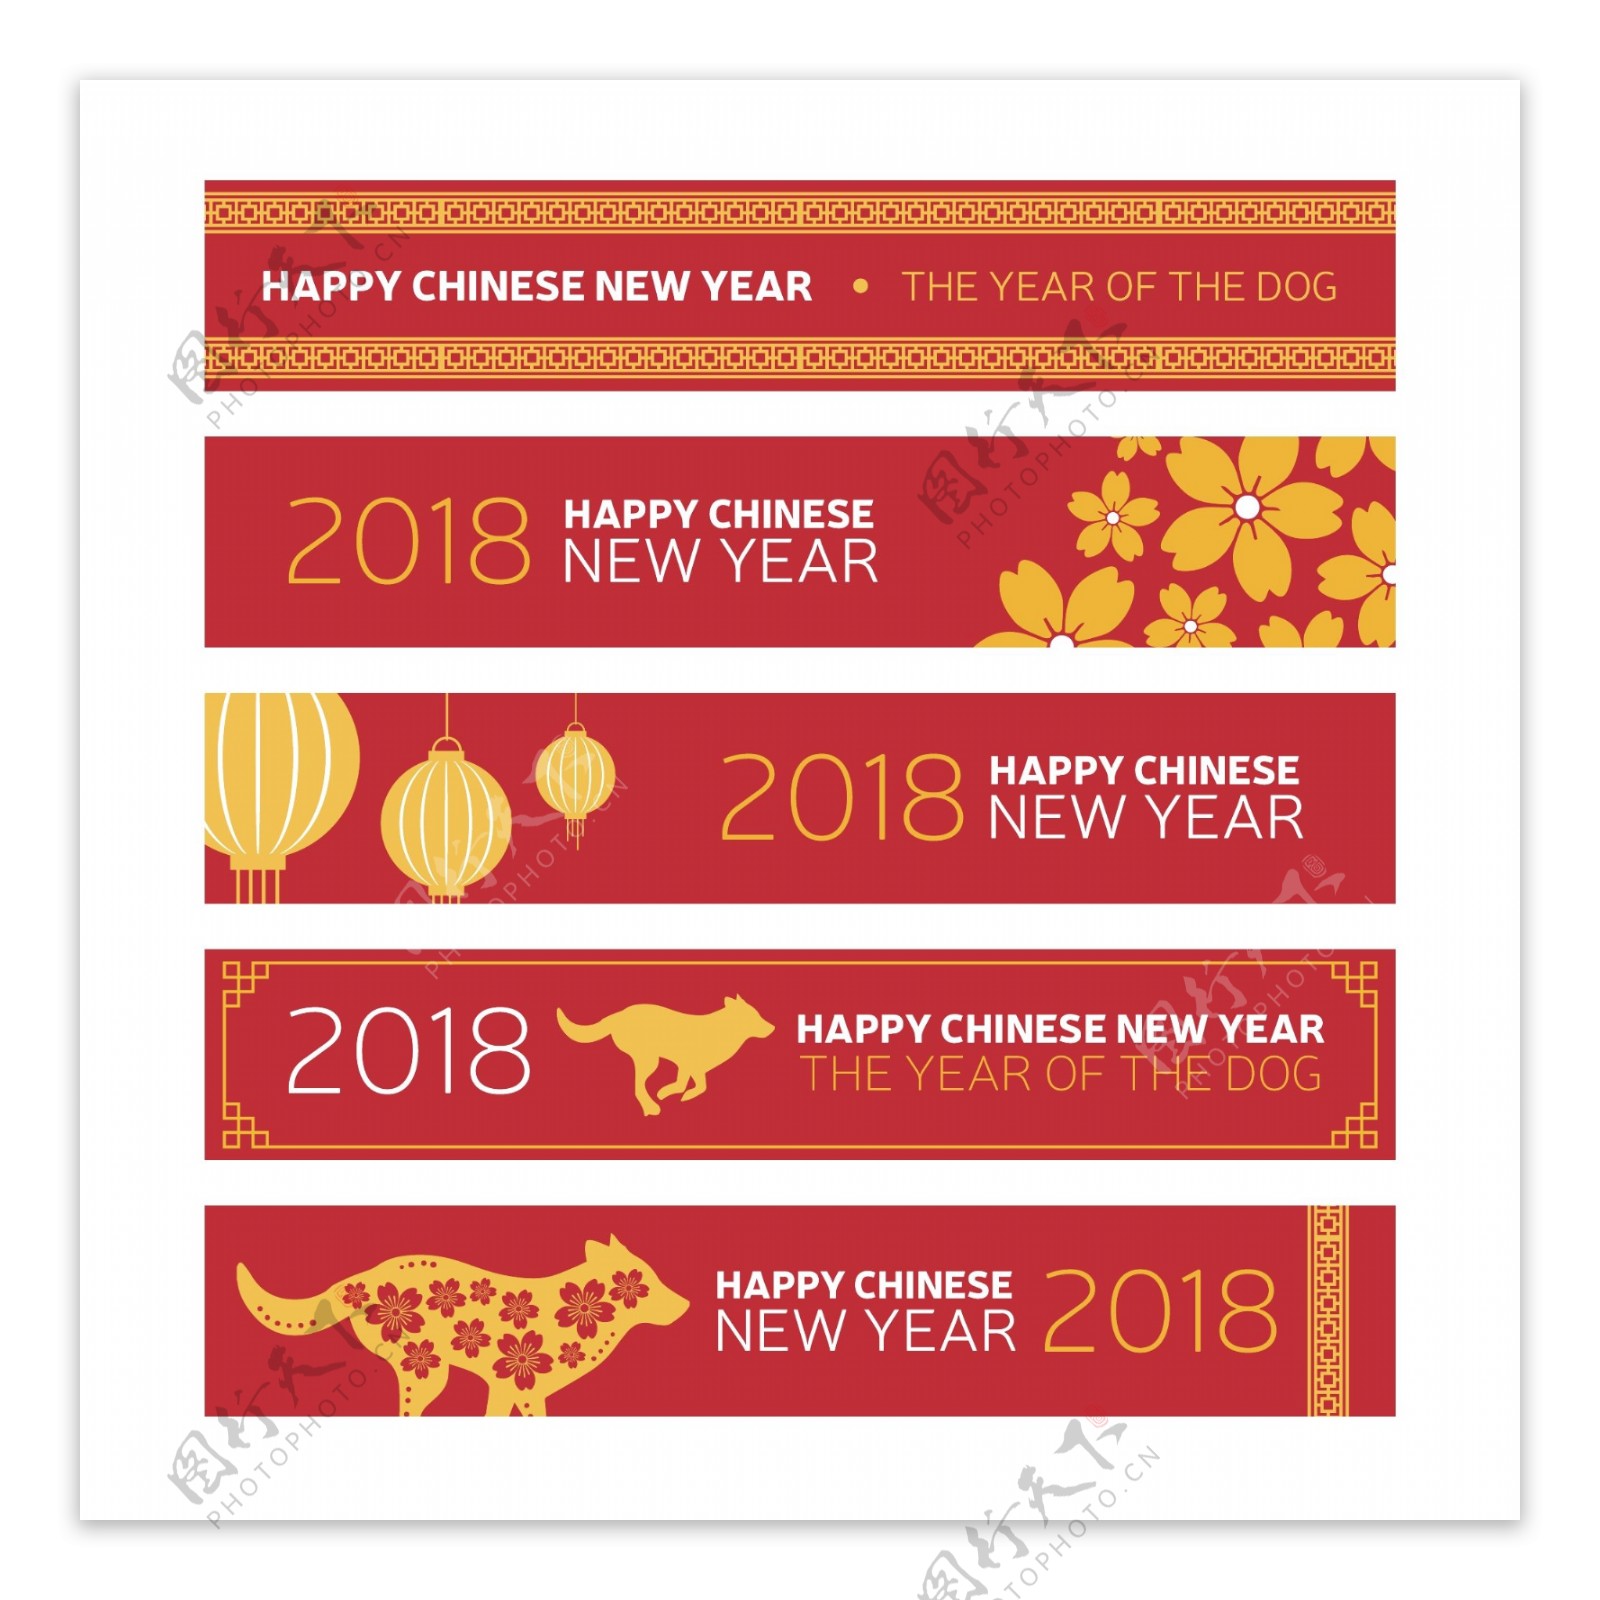 中国红狗年新年海报设计